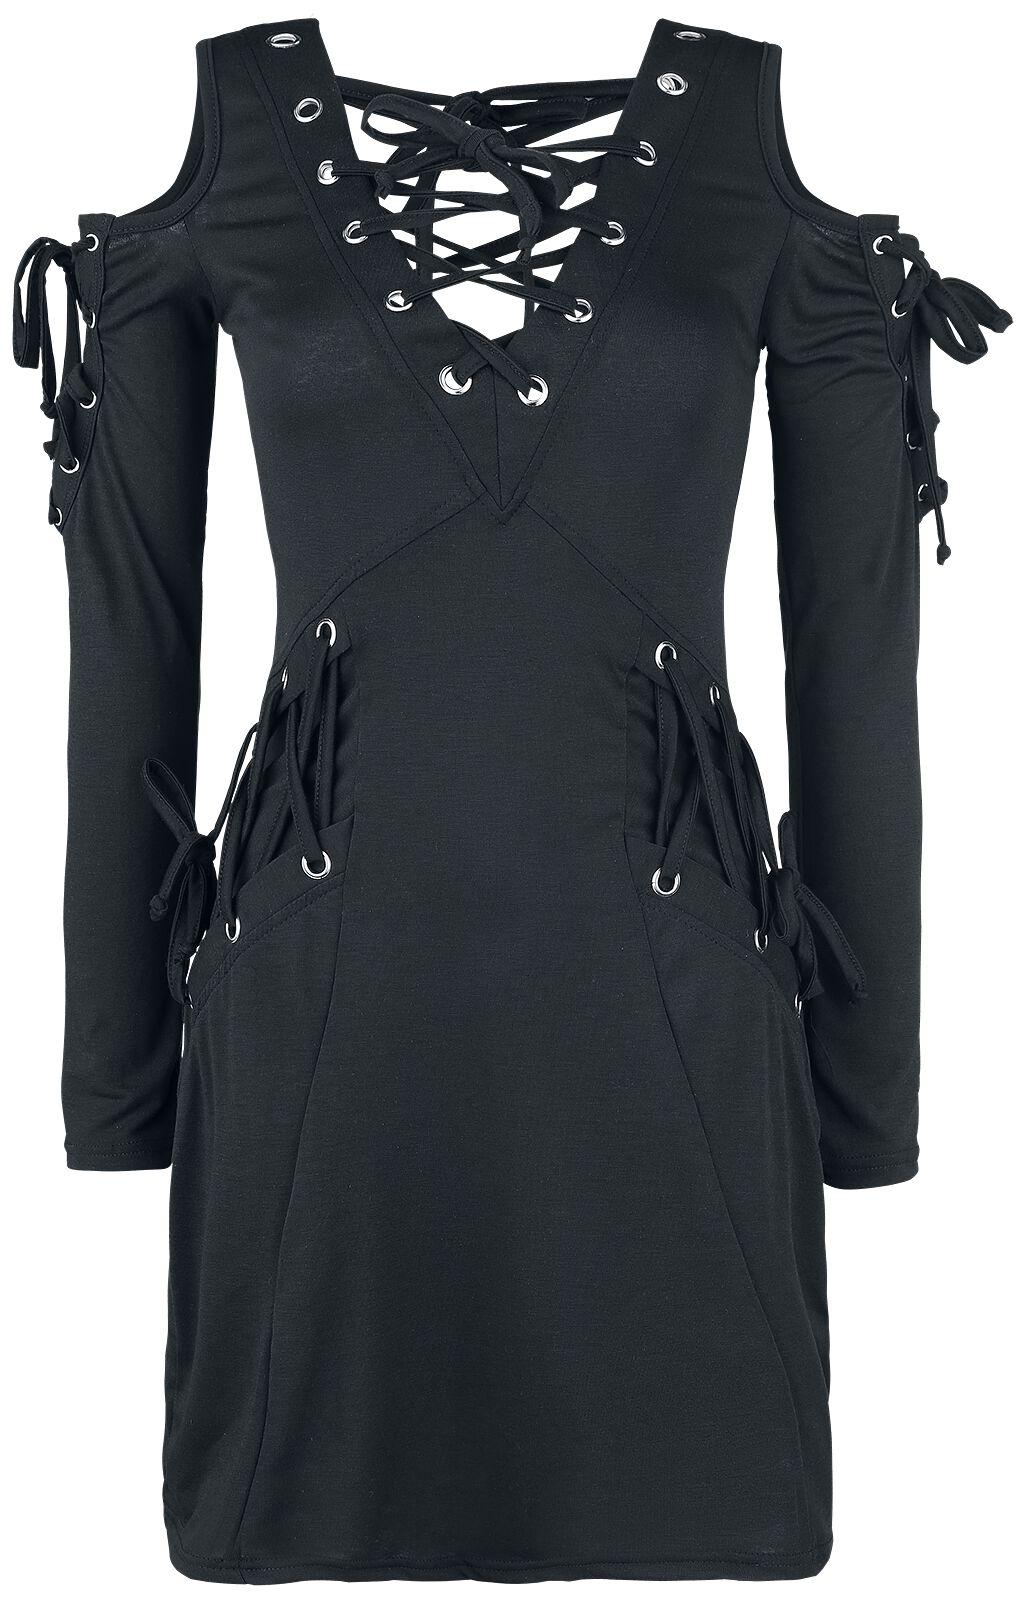 Innocent - Gothic Kurzes Kleid - Crave Top - S bis XXL - für Damen - Größe S - schwarz